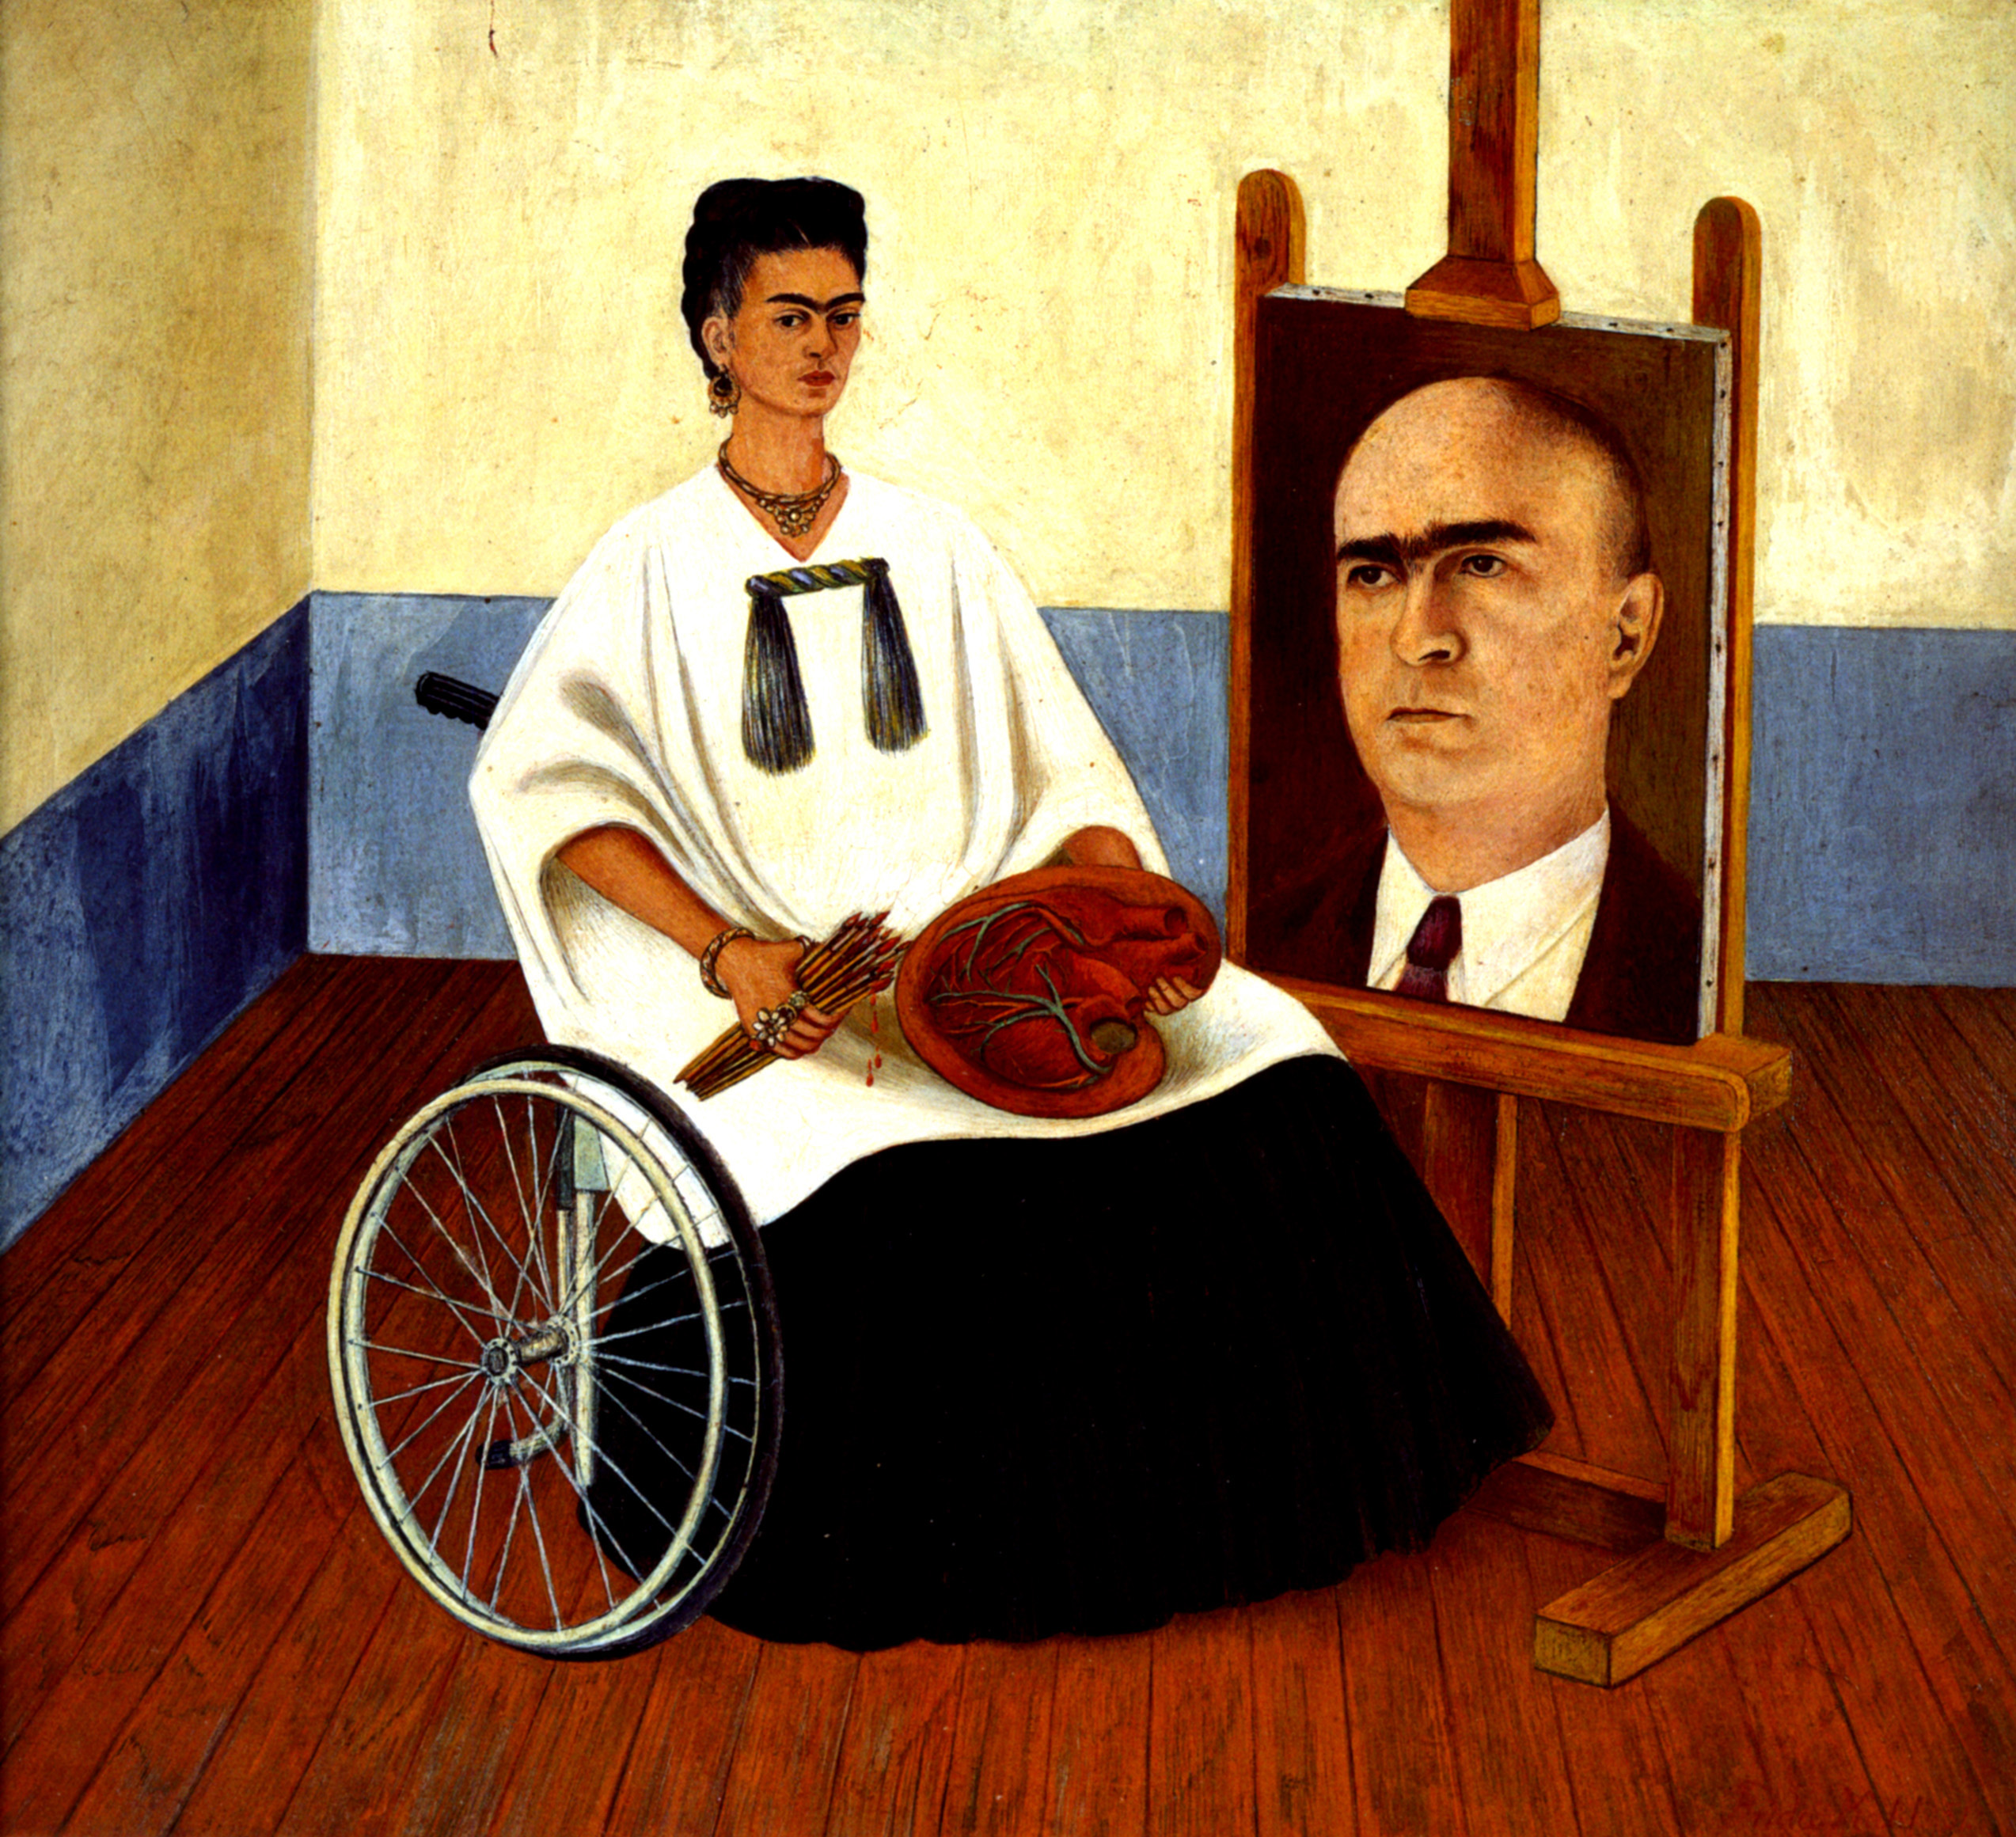 Кало картины. Фрида Кало автопортрет. Фрида Кало картины. Фрида Кало автопортрет с портретом доктора Фарилла. Фрида Кало (1907-1954).